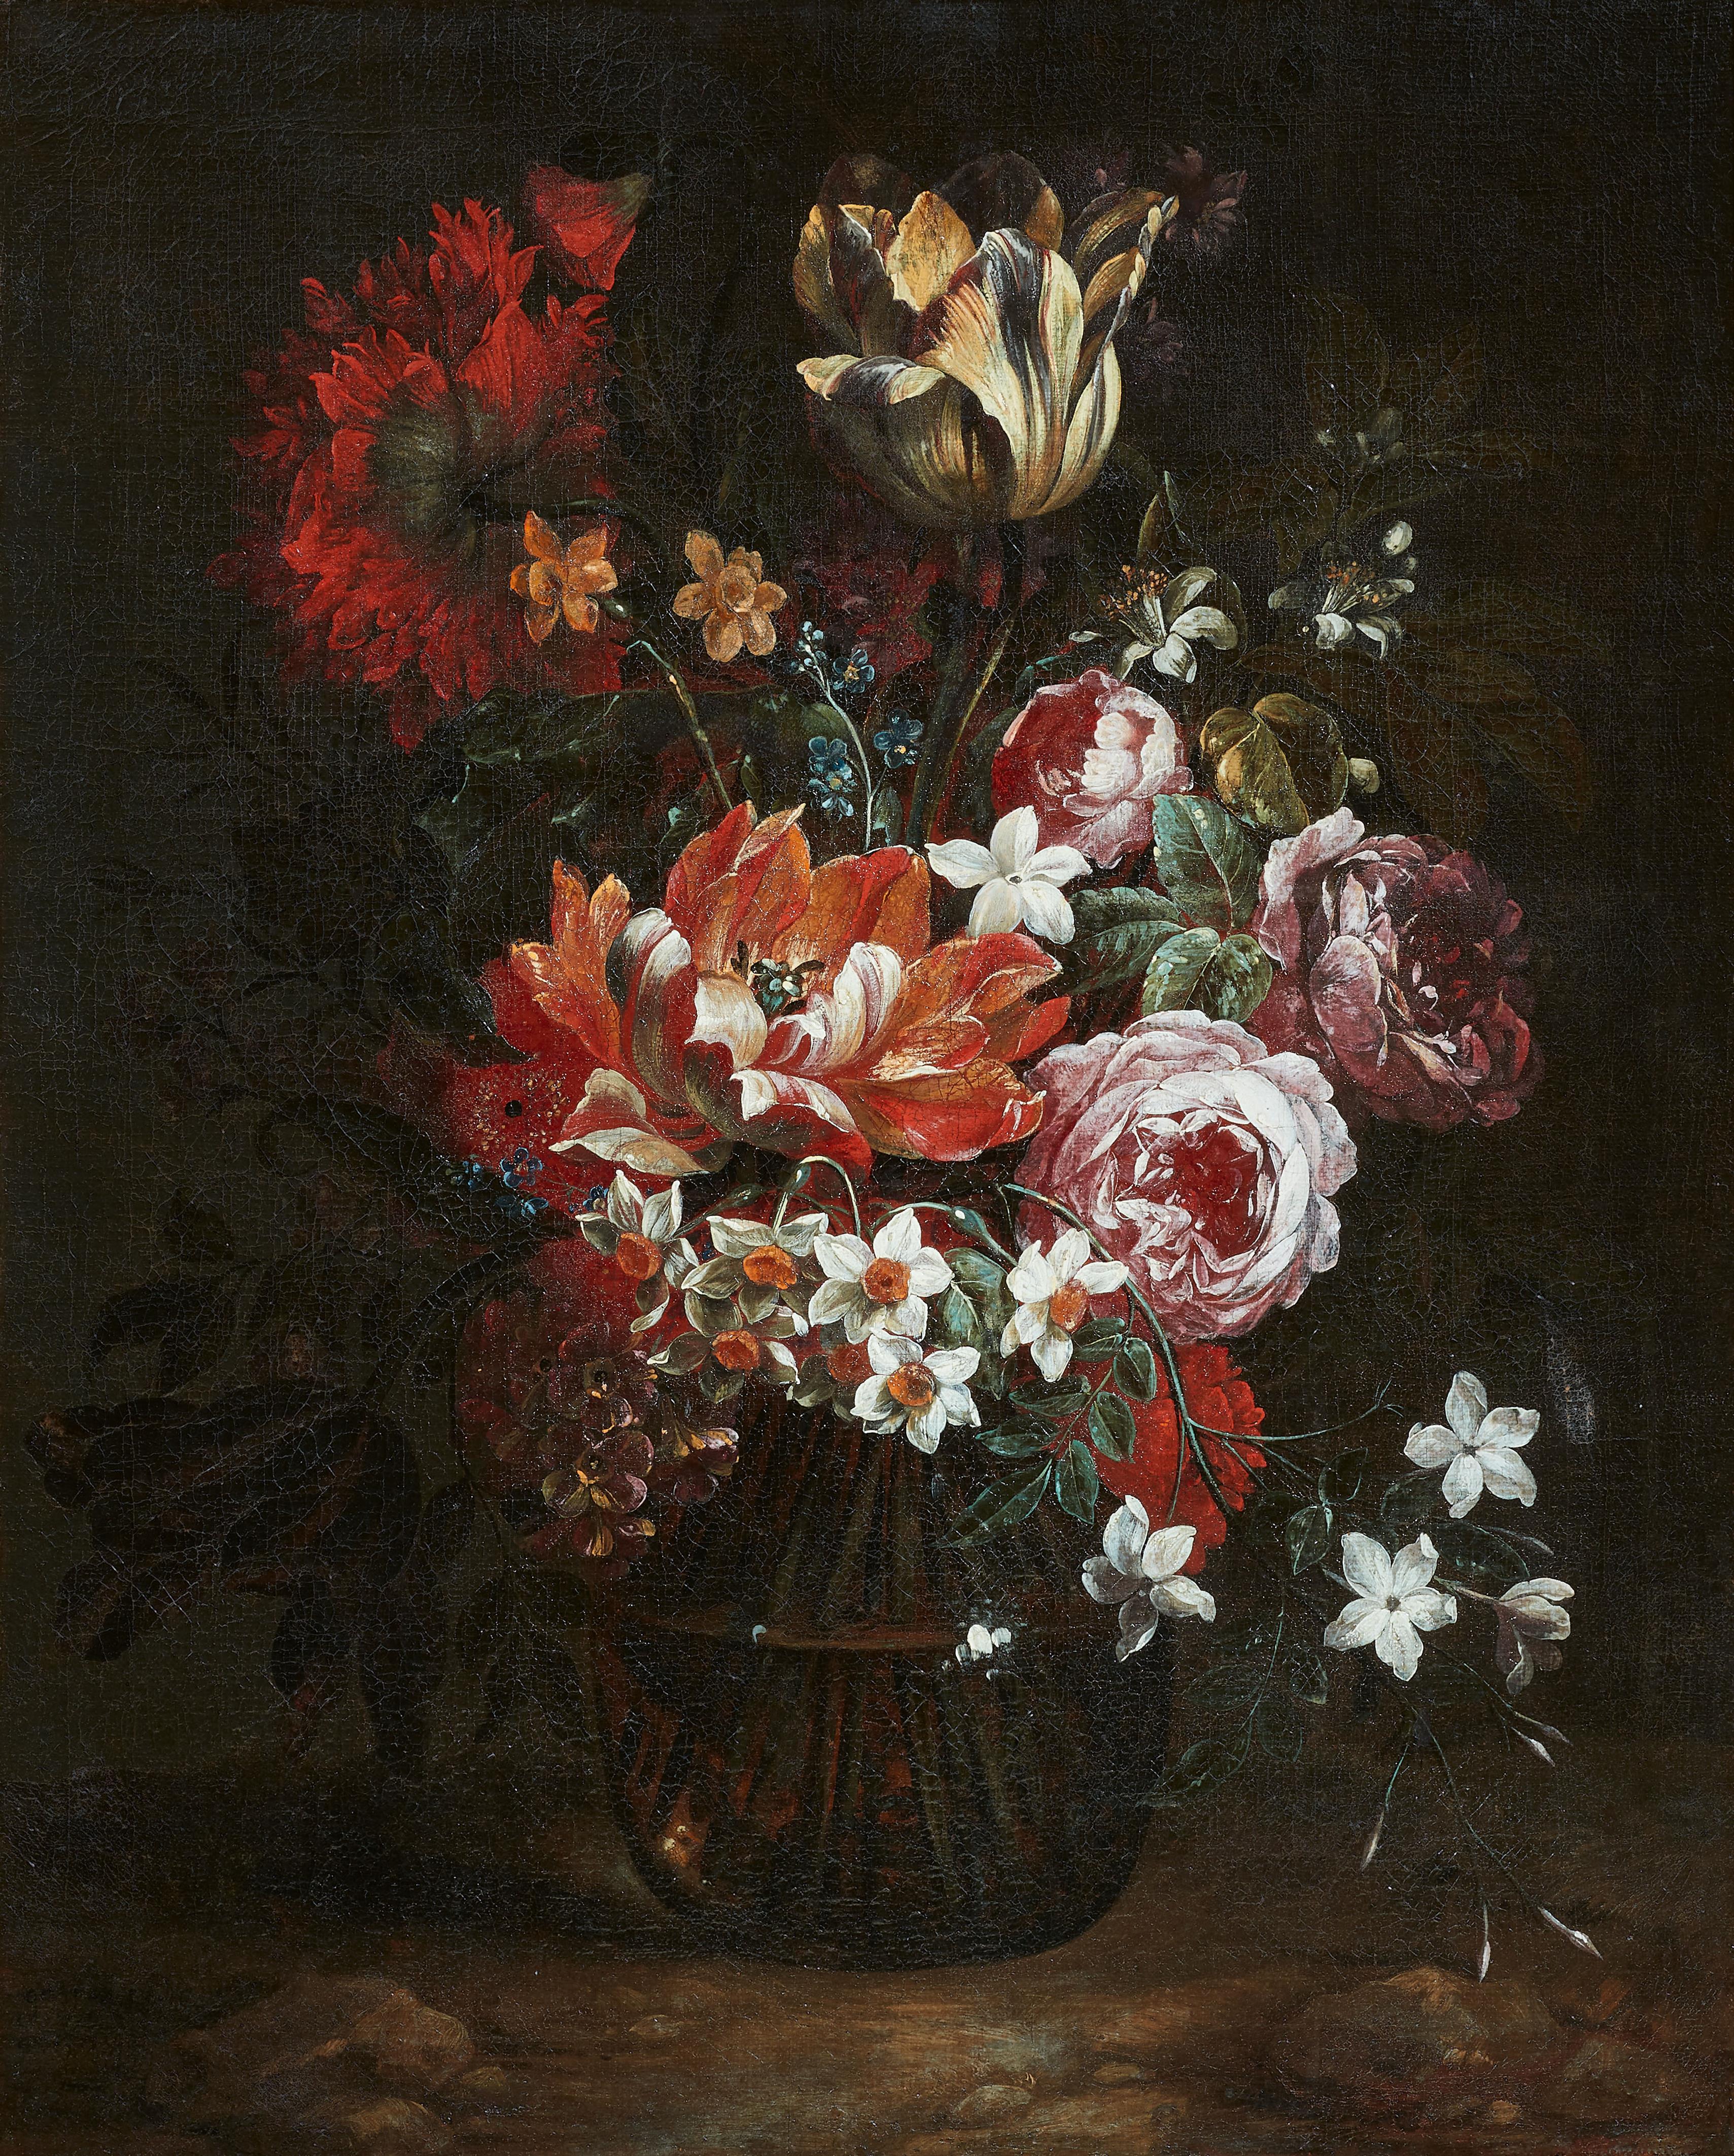 Gaspar Peeter Verbruggen II - Flowers in a Vase - image-1